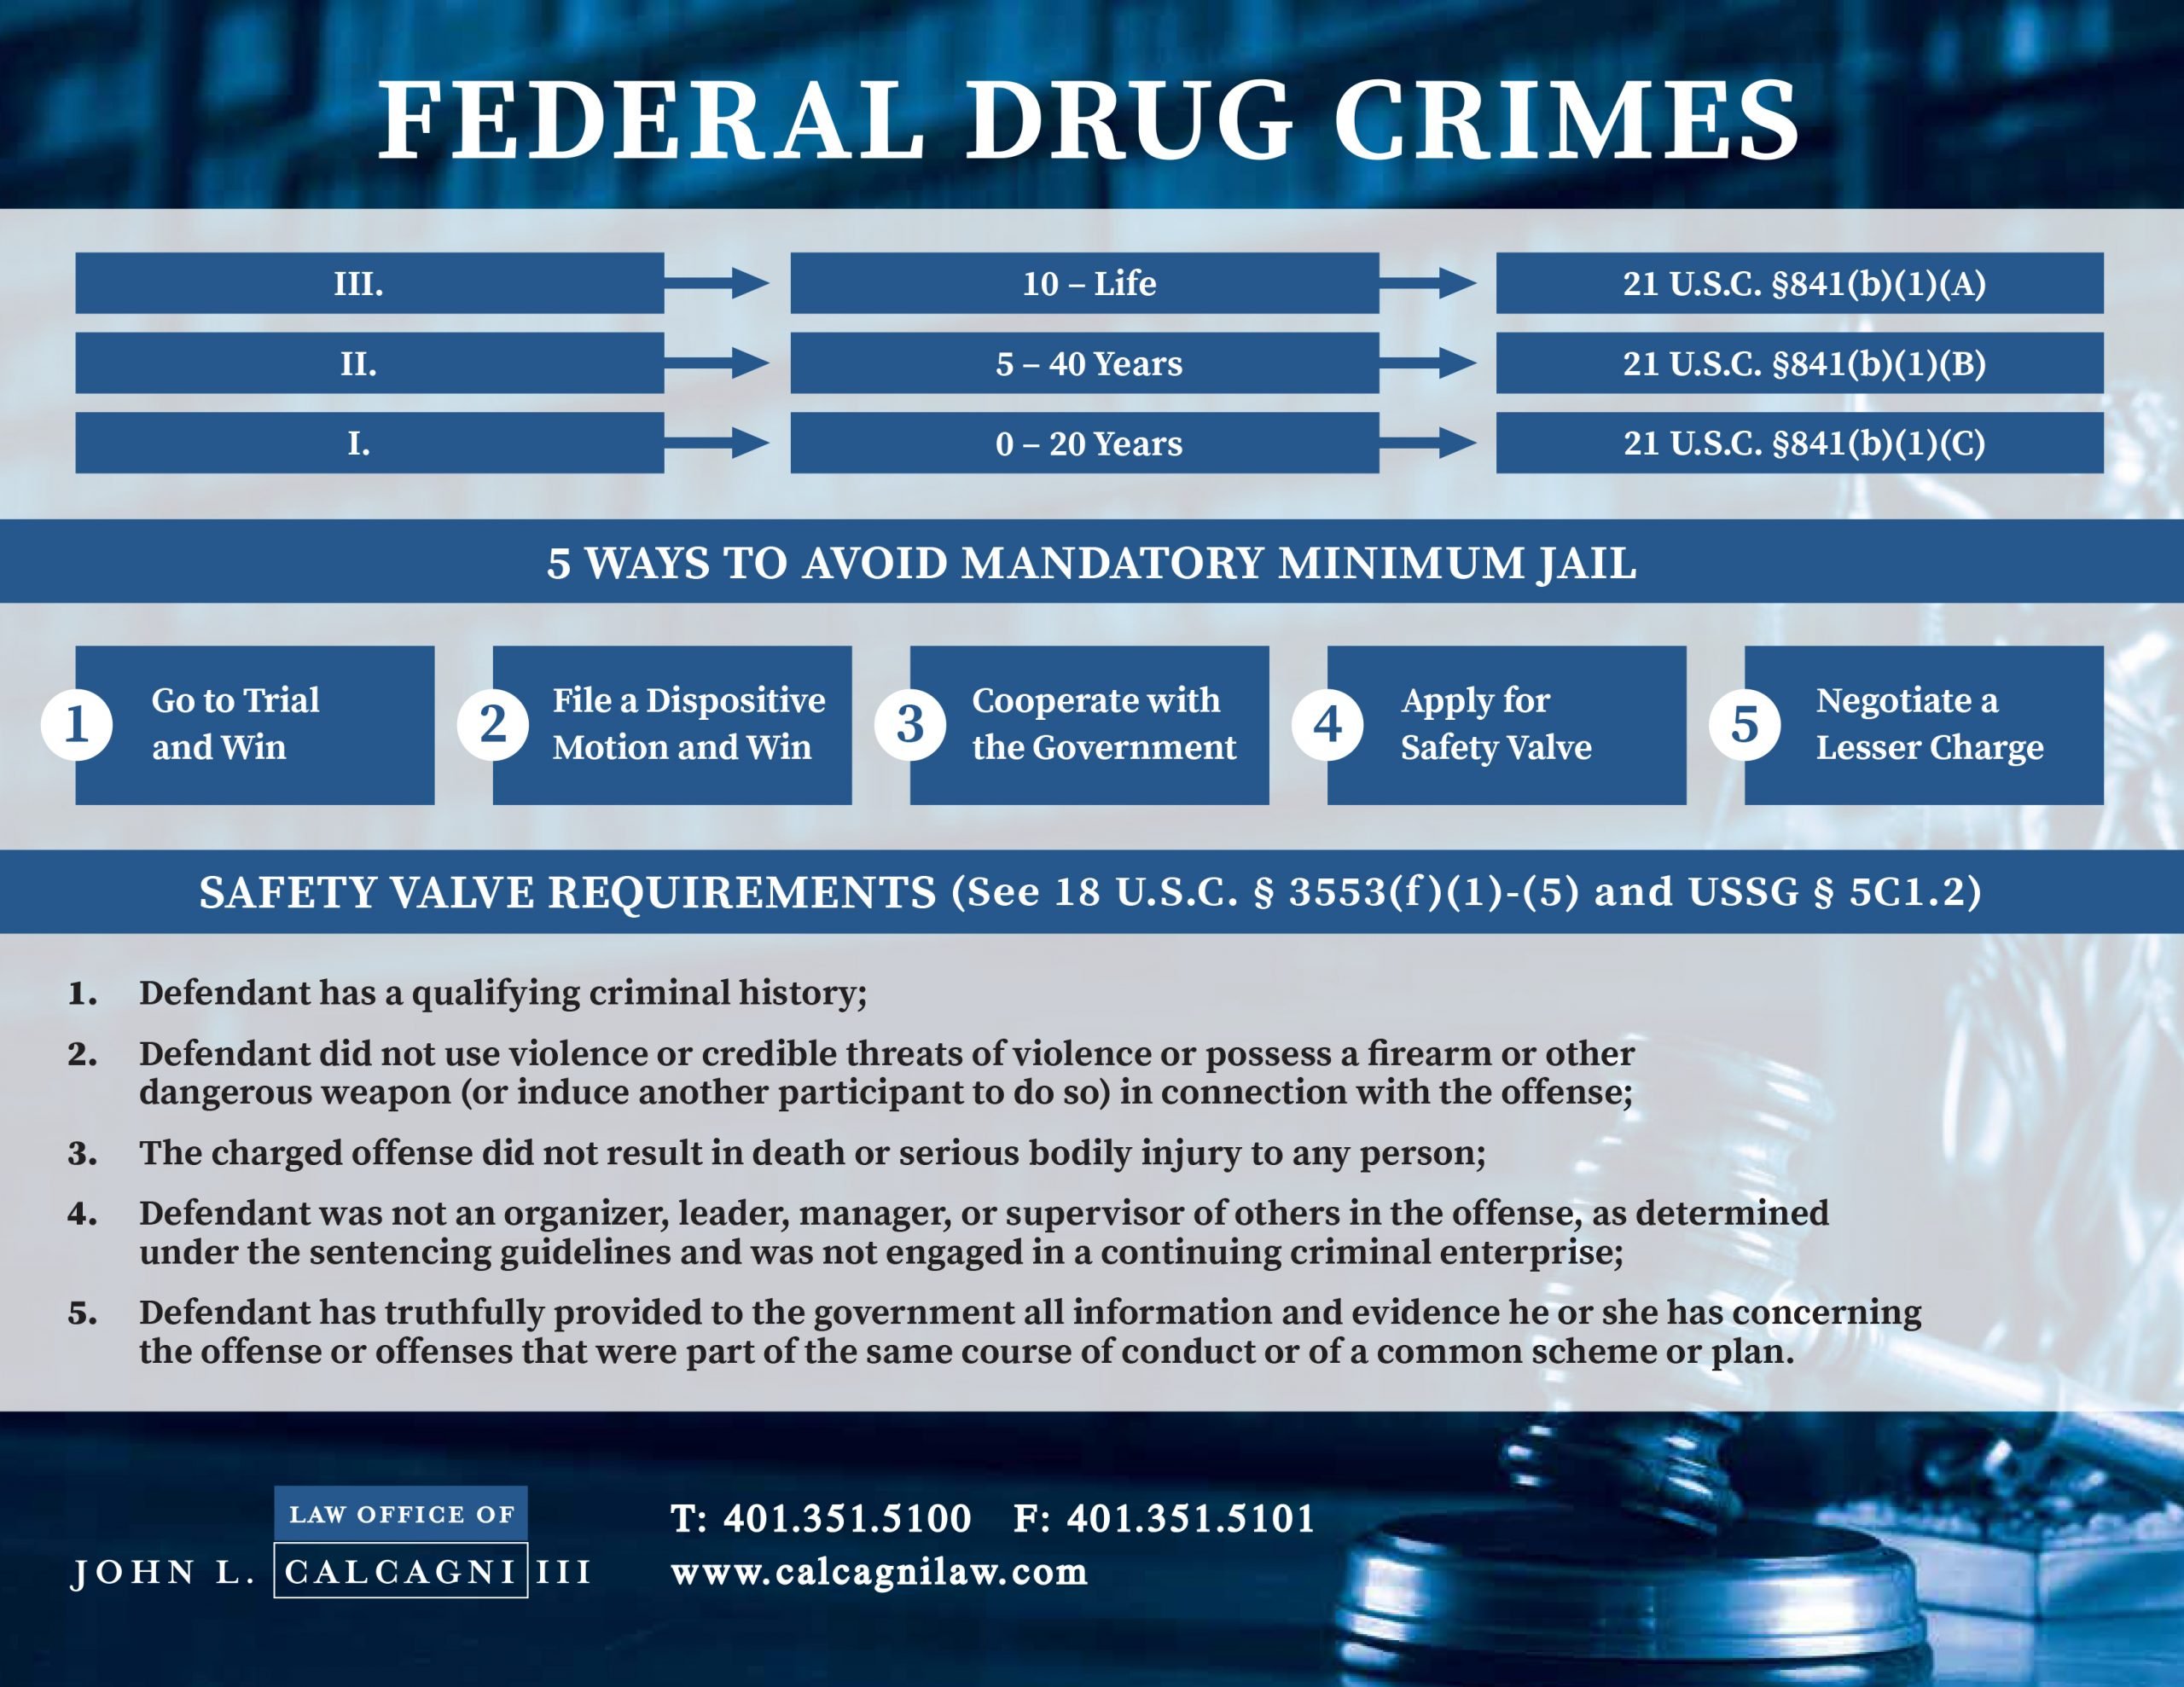 Federal Drug Crimes Timeline Law Office Of John L Calcagni Iii